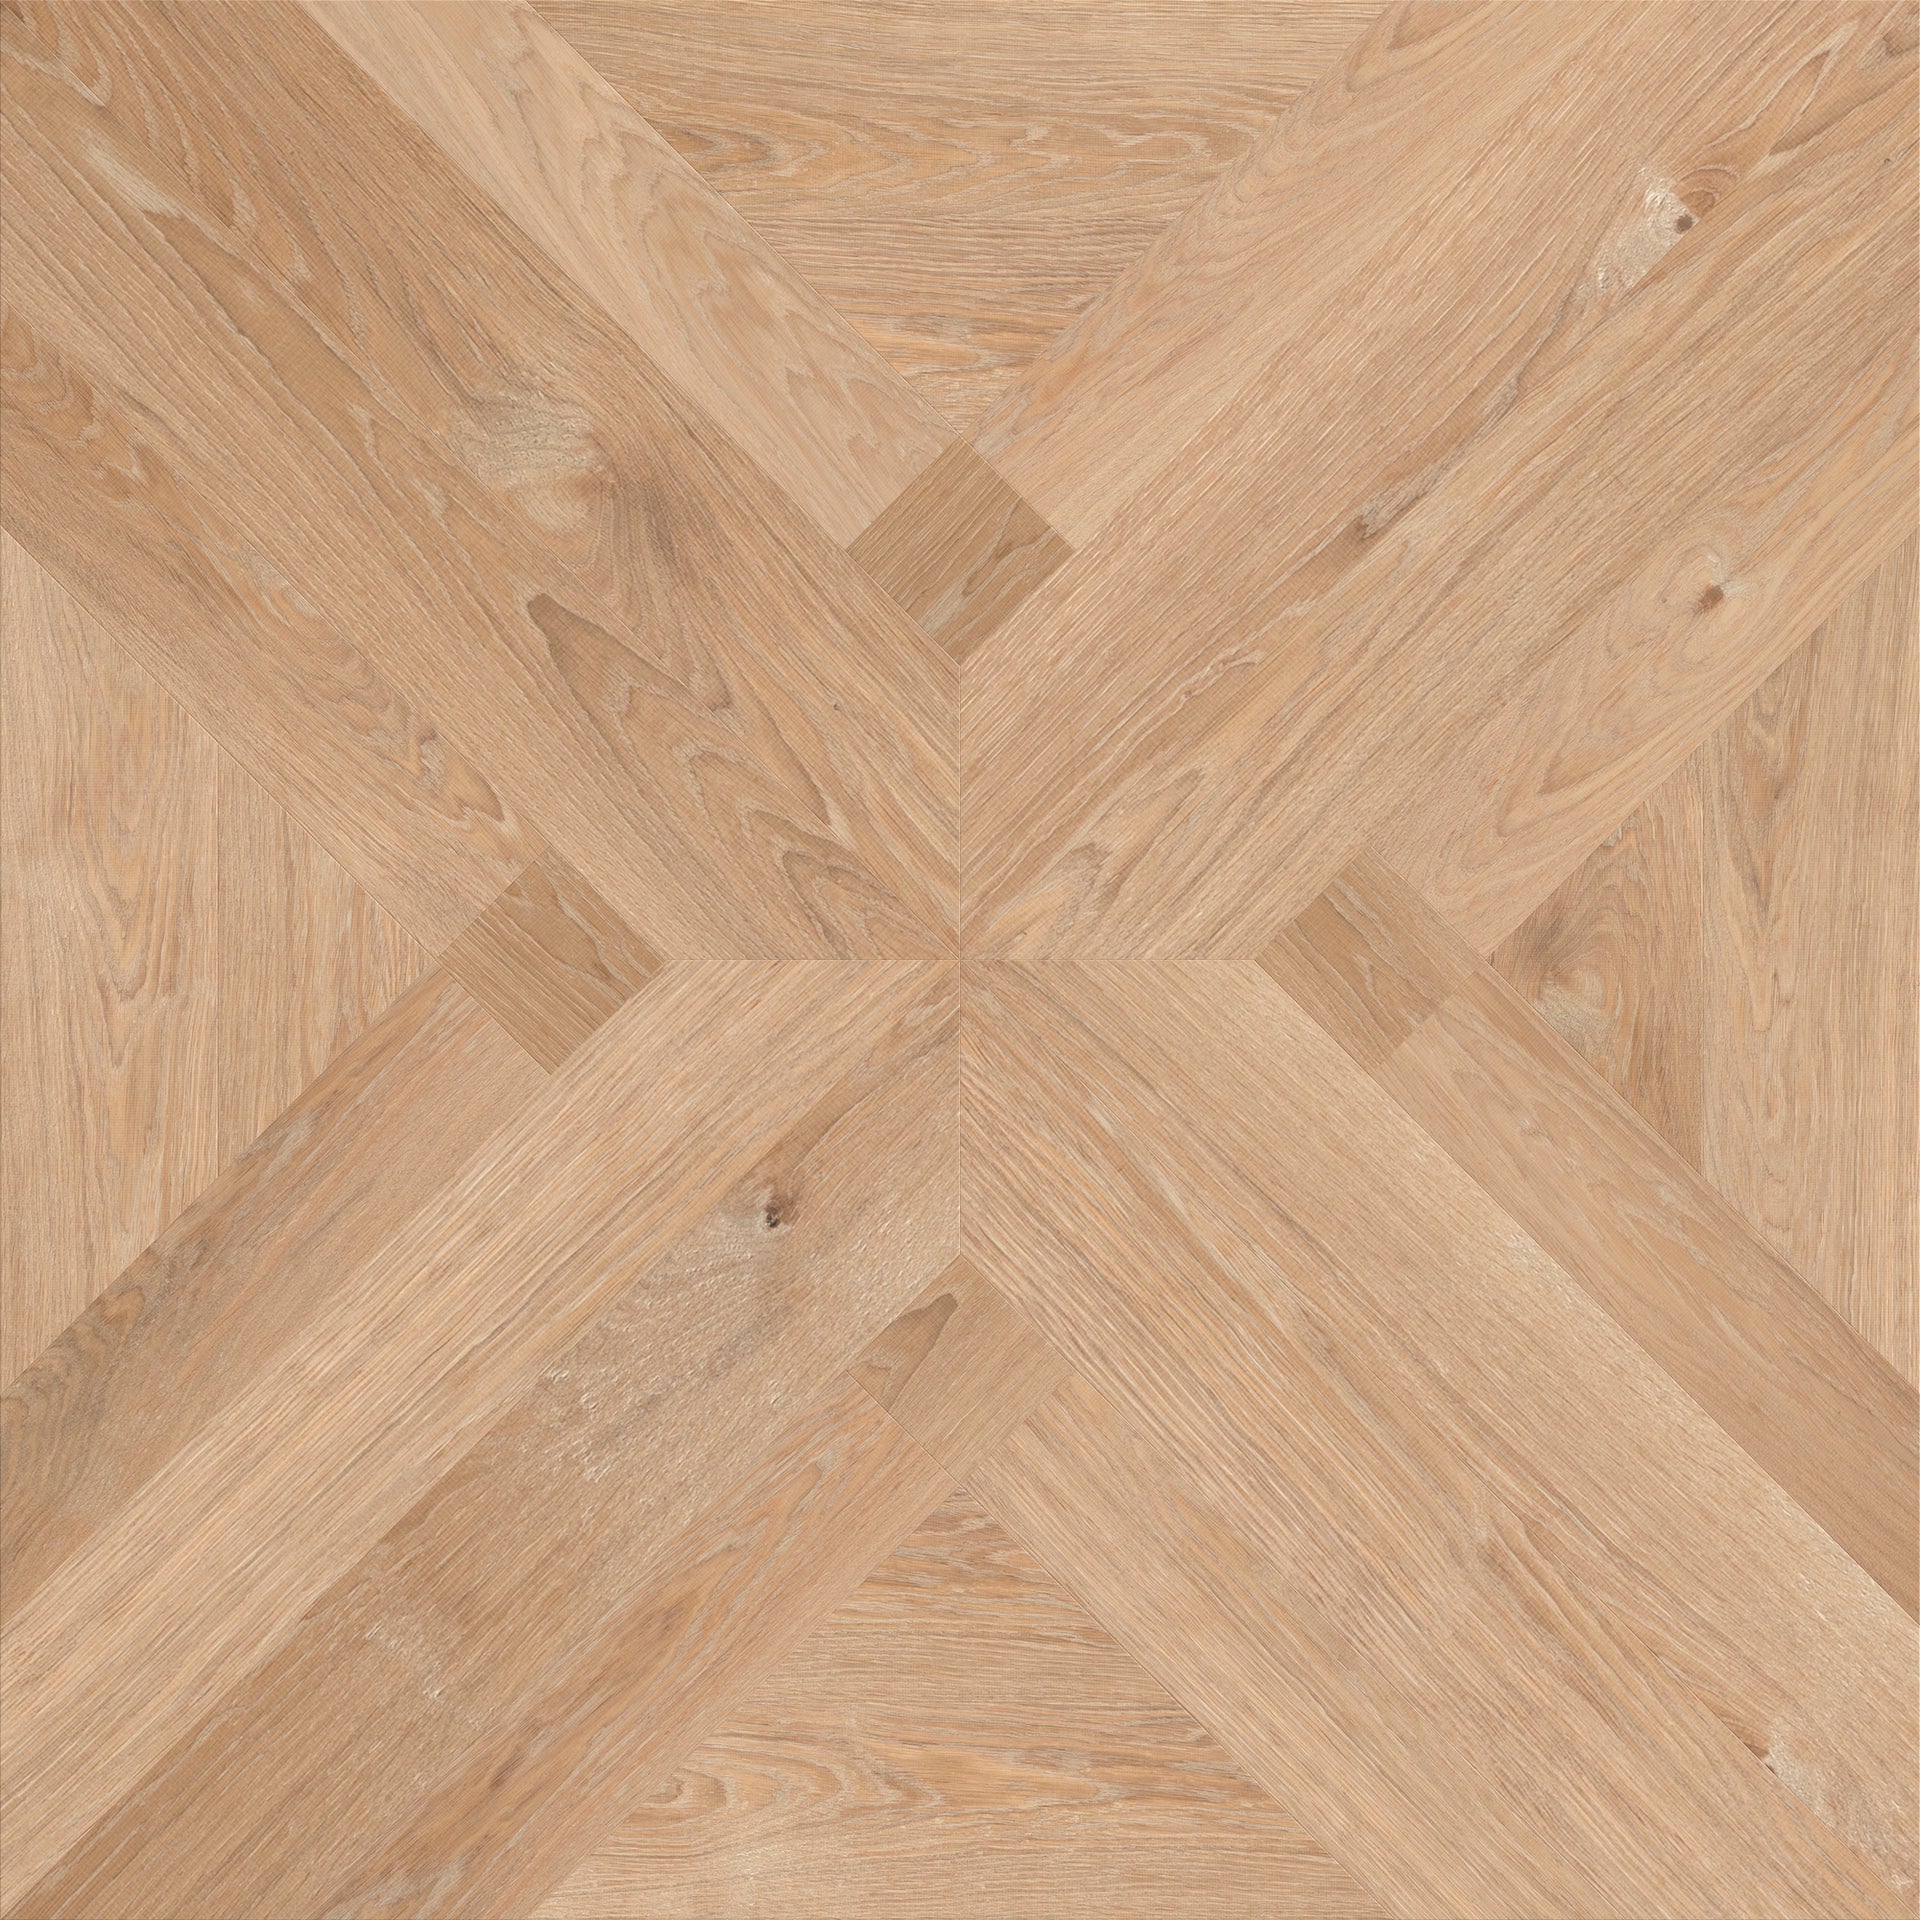 Normandië patroon houten vloeren paneel van Uipkes